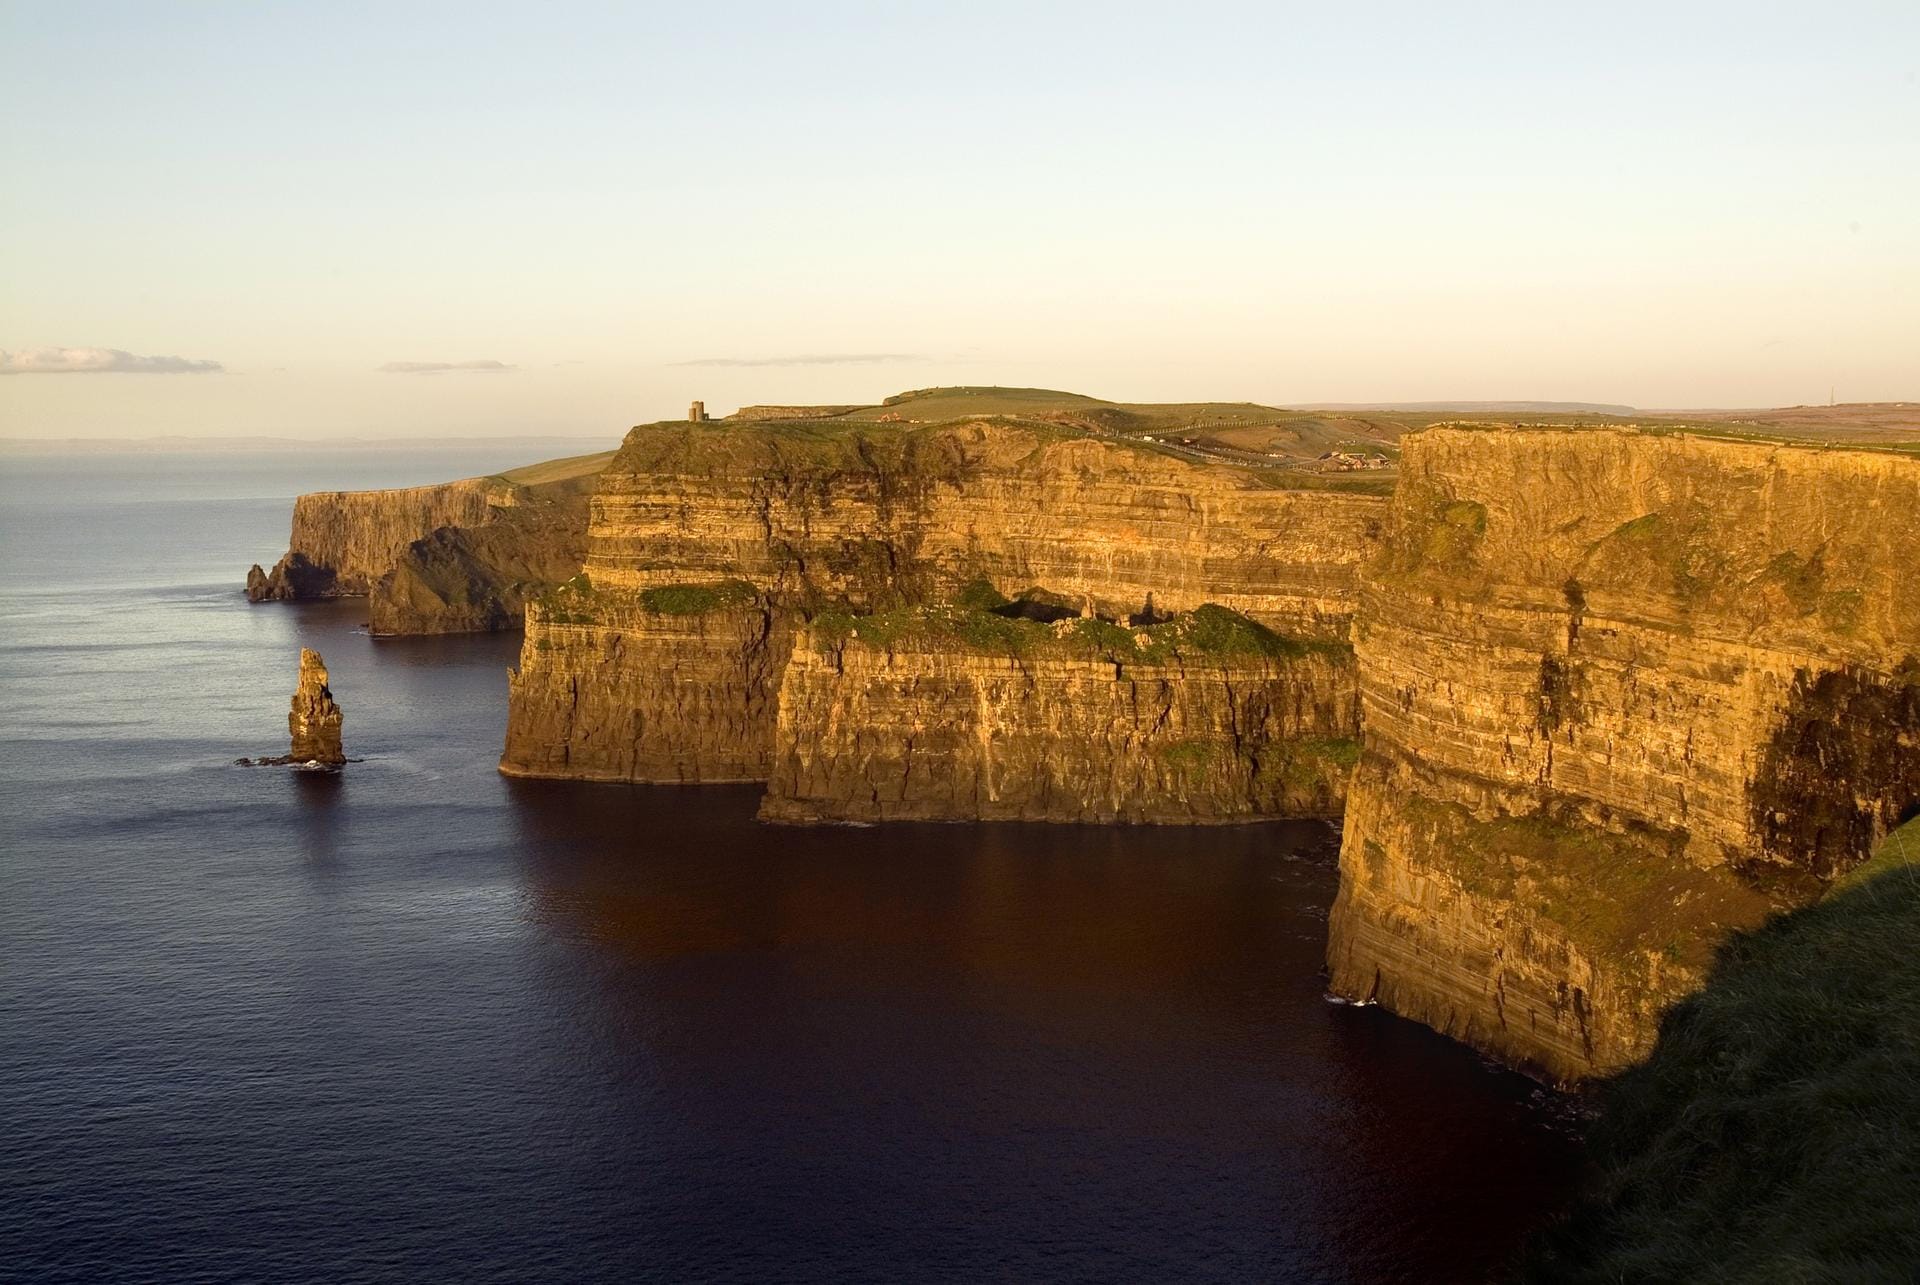 Die Westküste Irlands gilt als raue Schönheit, geprägt von schroffen Felsen, unendlich grünen Weiten und tosenden Winden.